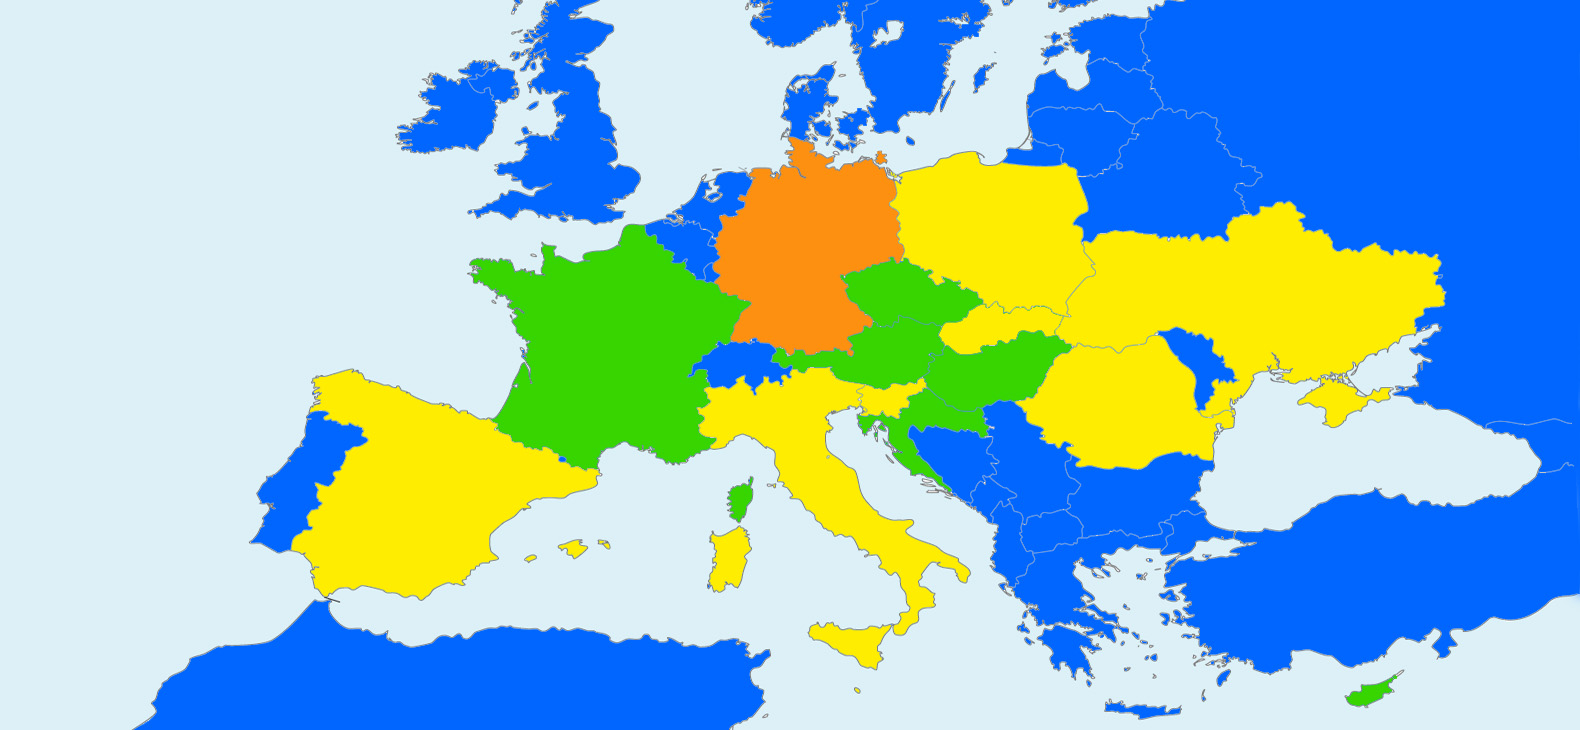 Landkarte von Europa in Blau mit den aktuellen Partnerländern des Europäischen Kunststipendiums des Bezirks Oberbayern 2024 in Grün, früheren Partnerländern in Gelb und Deutschland in Orange.